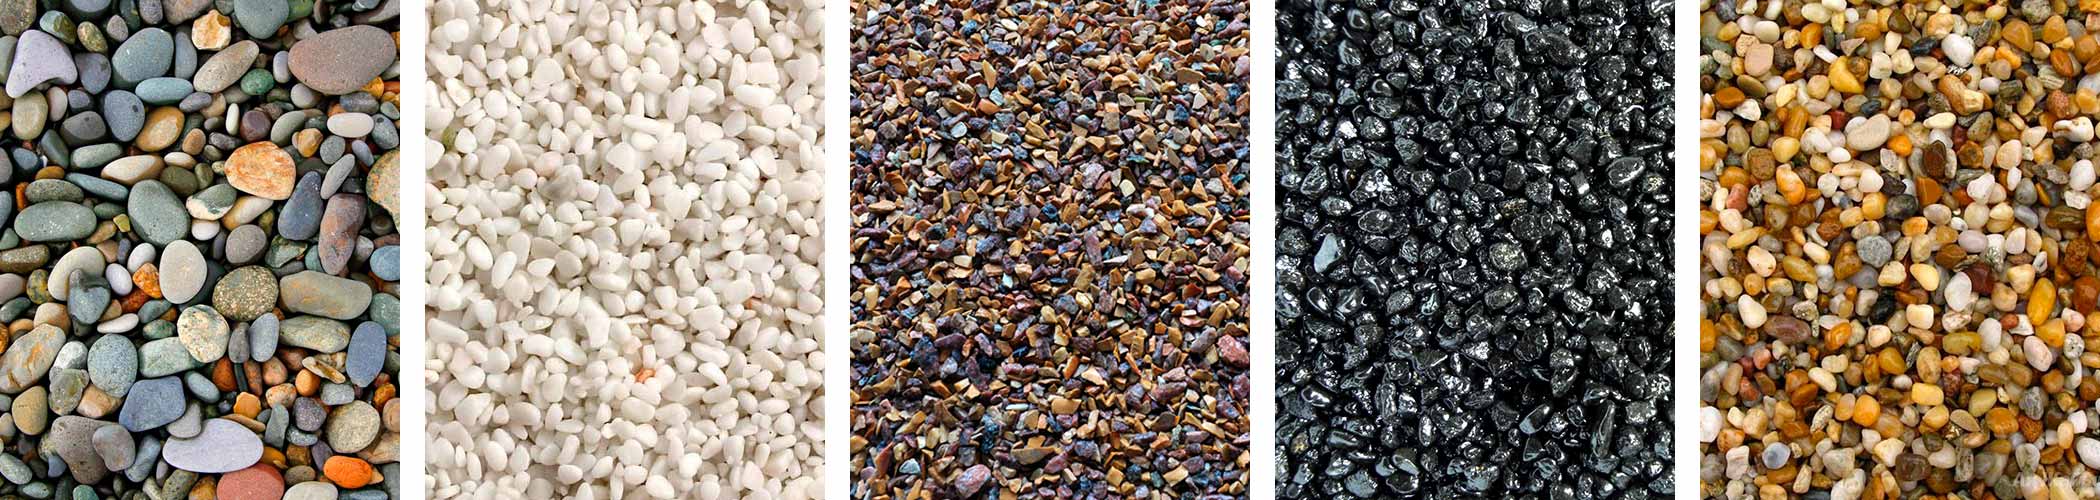 Разнообразие цветов и размеров зерна натуральных грунтов